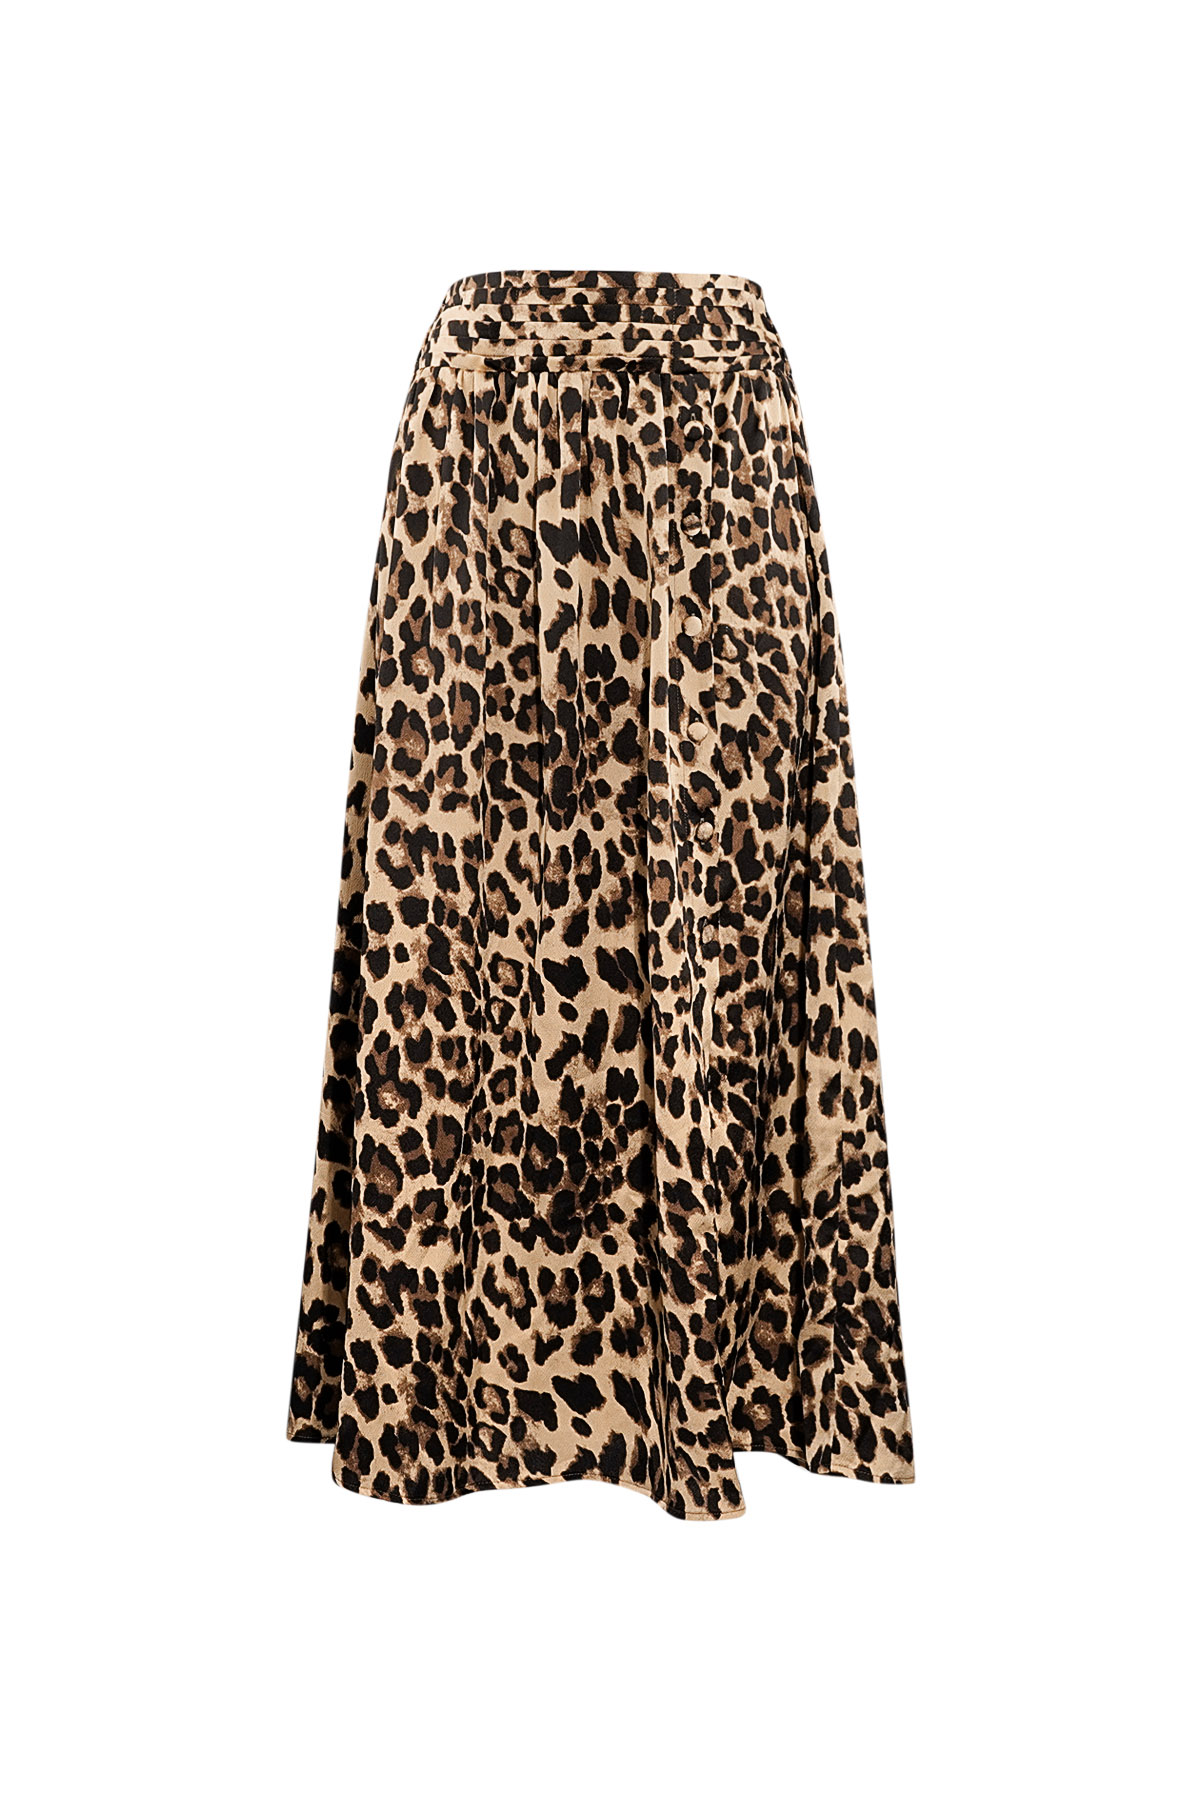 Long leopard print skirt - brown